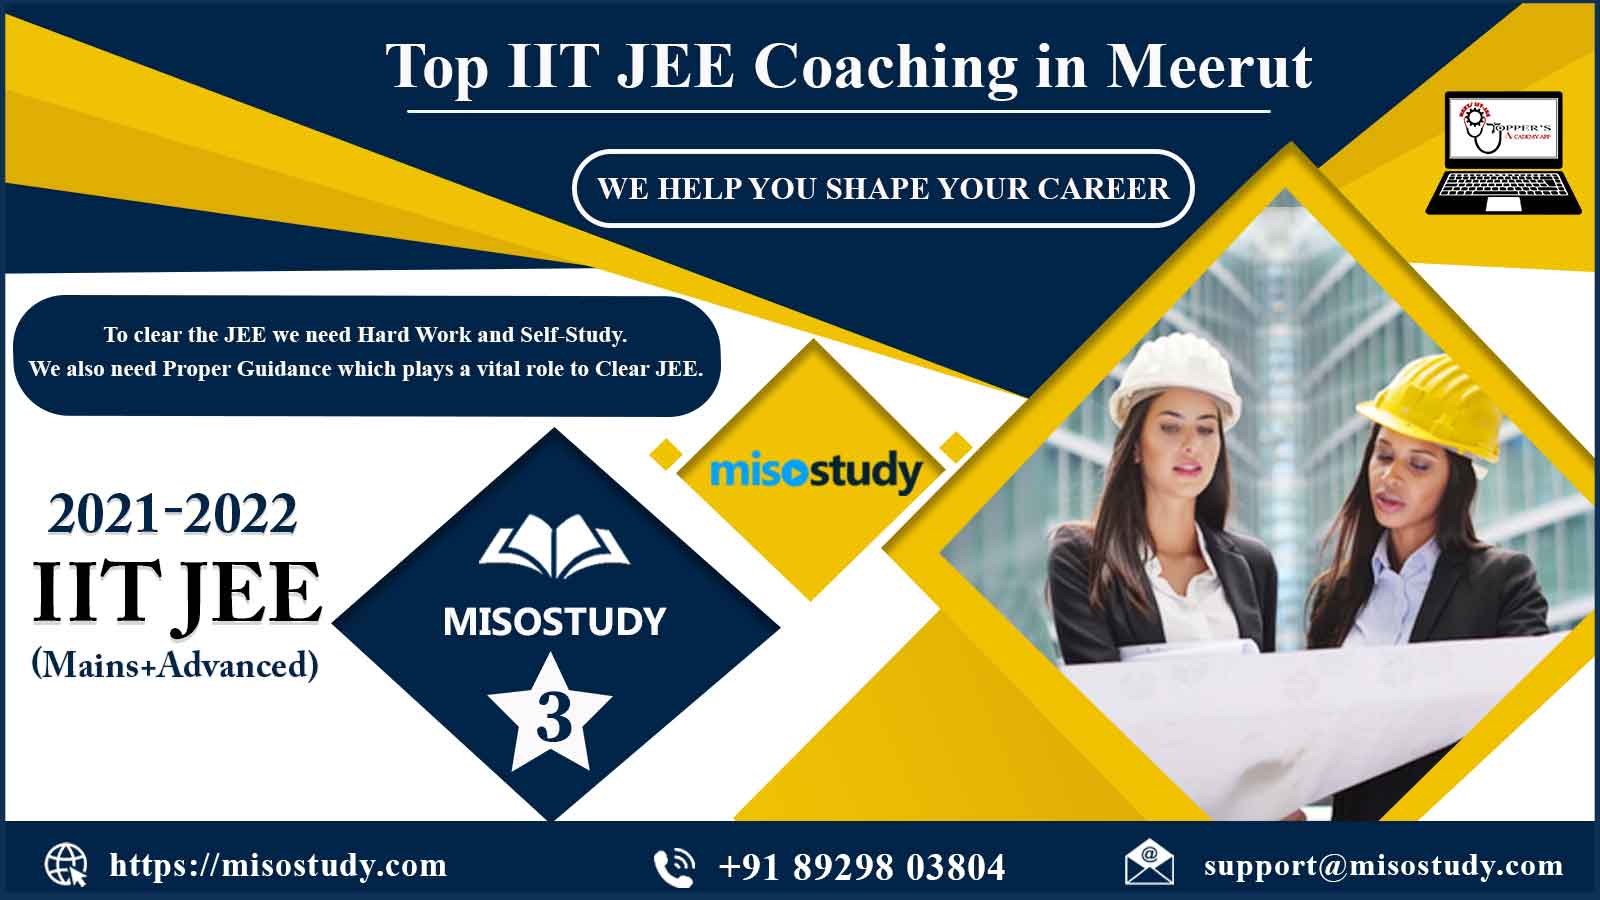 Misostudy IIT JEE Coaching in Meerut